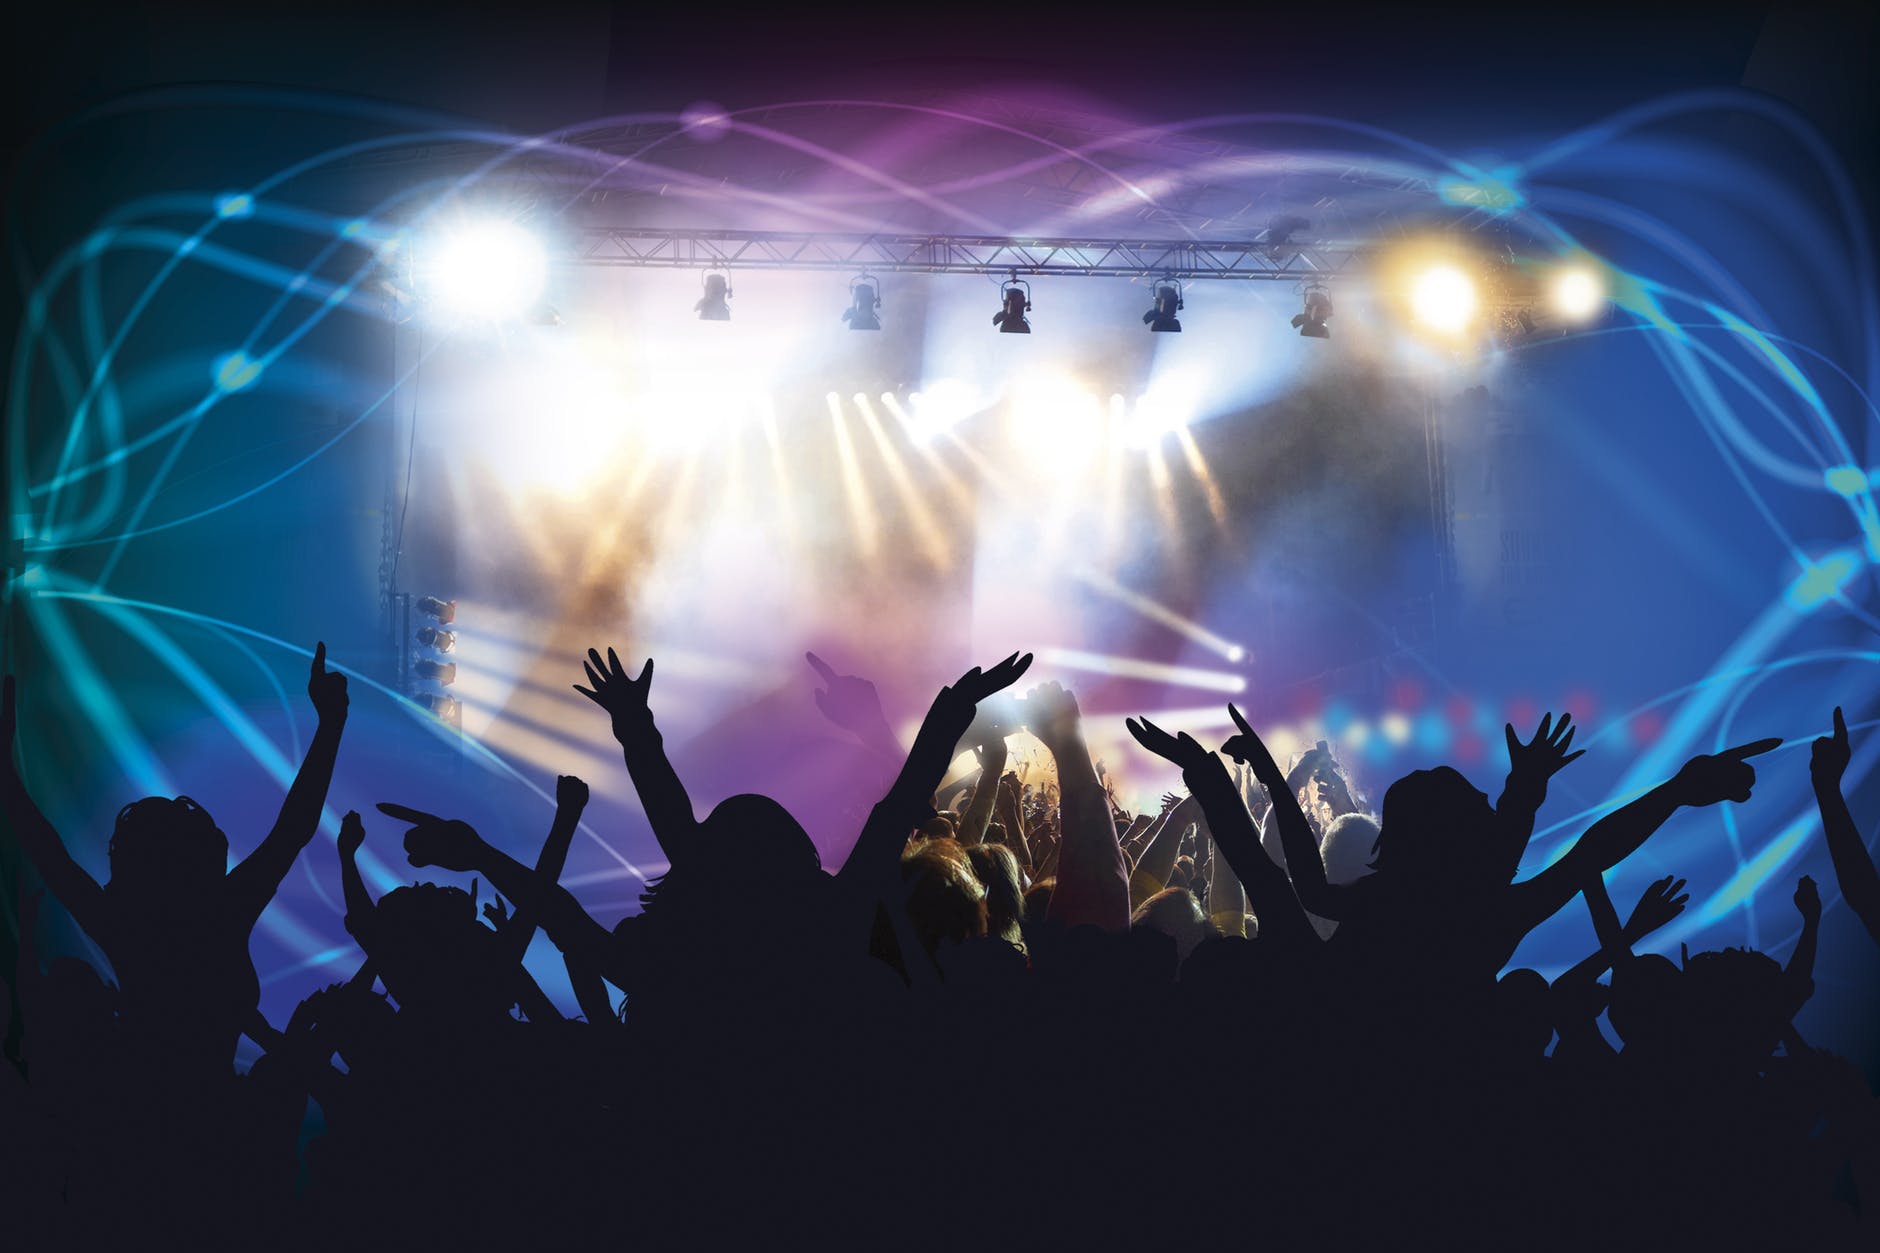 Asistir a conciertos alarga la vida según un estudio